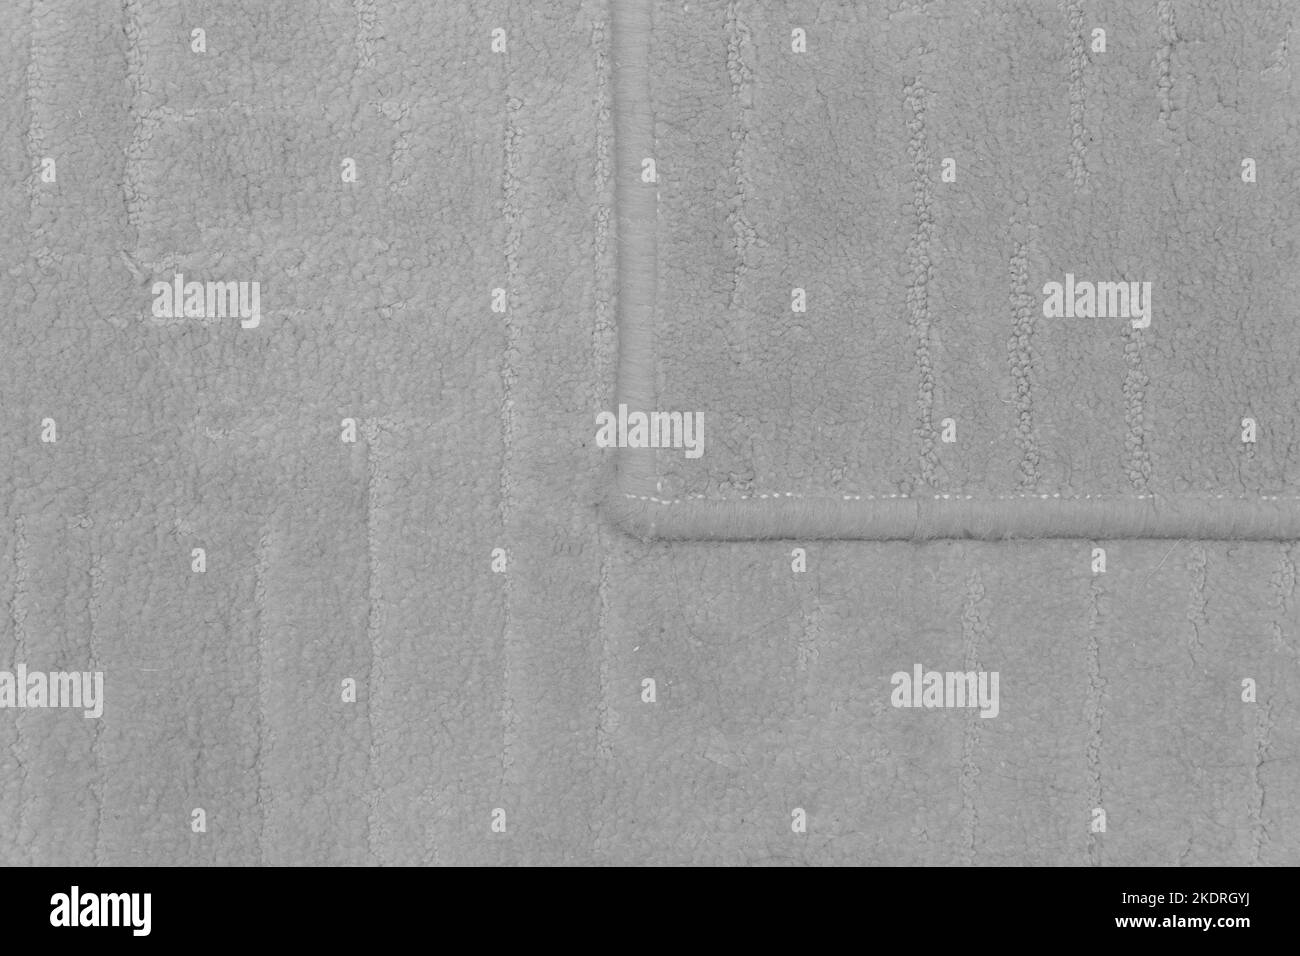 Dettaglio tappeto frammento di tessuto per pavimento in materiale grigio per la texture della superficie della parte di disegno. Foto Stock